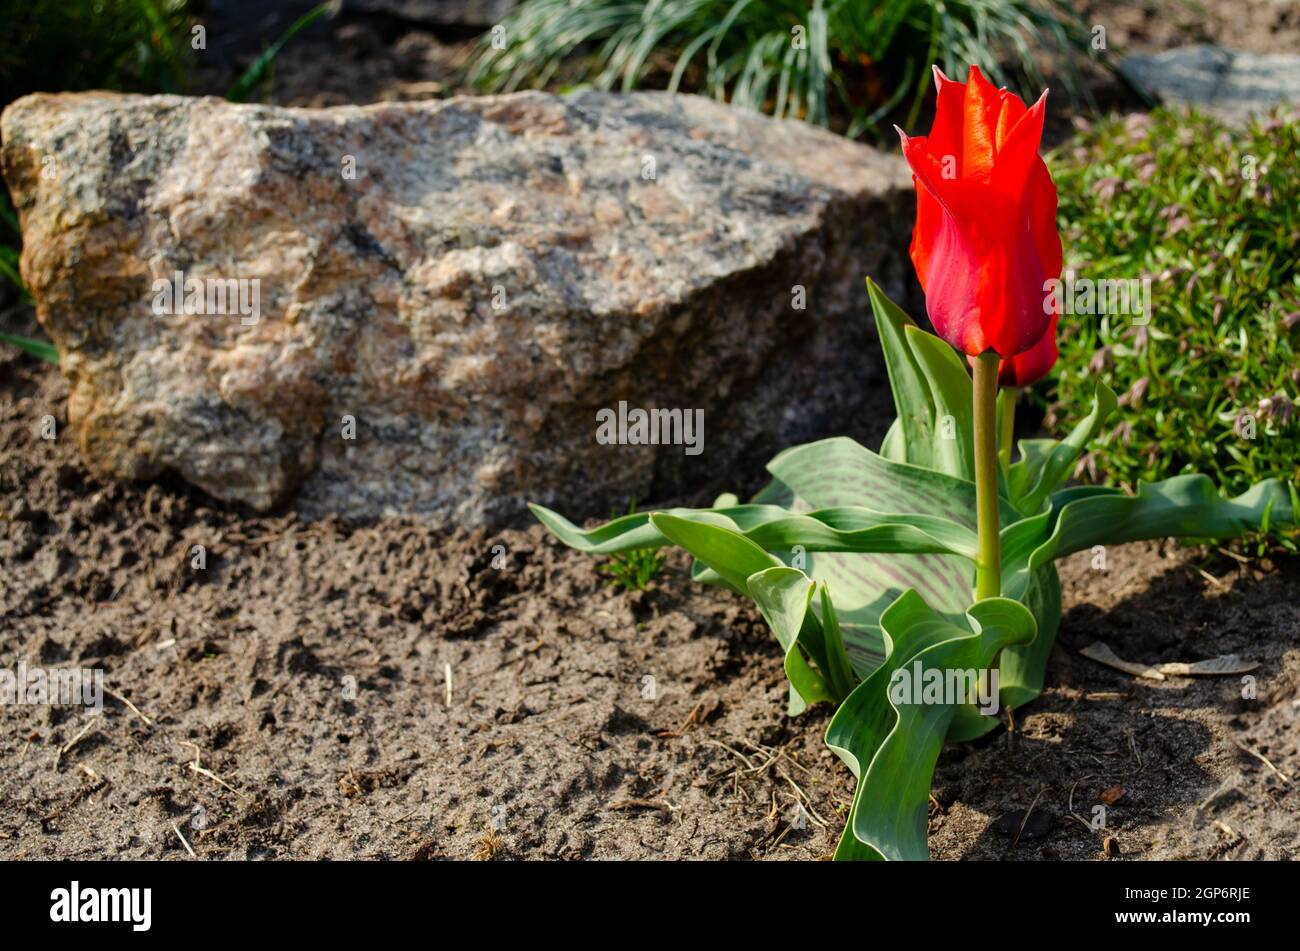 Eine leuchtend rote Tulpenblume ist eine Passionsblume. Die rote Tulpe symbolisiert starke, selbstlose, wahre Liebe. Stockfoto